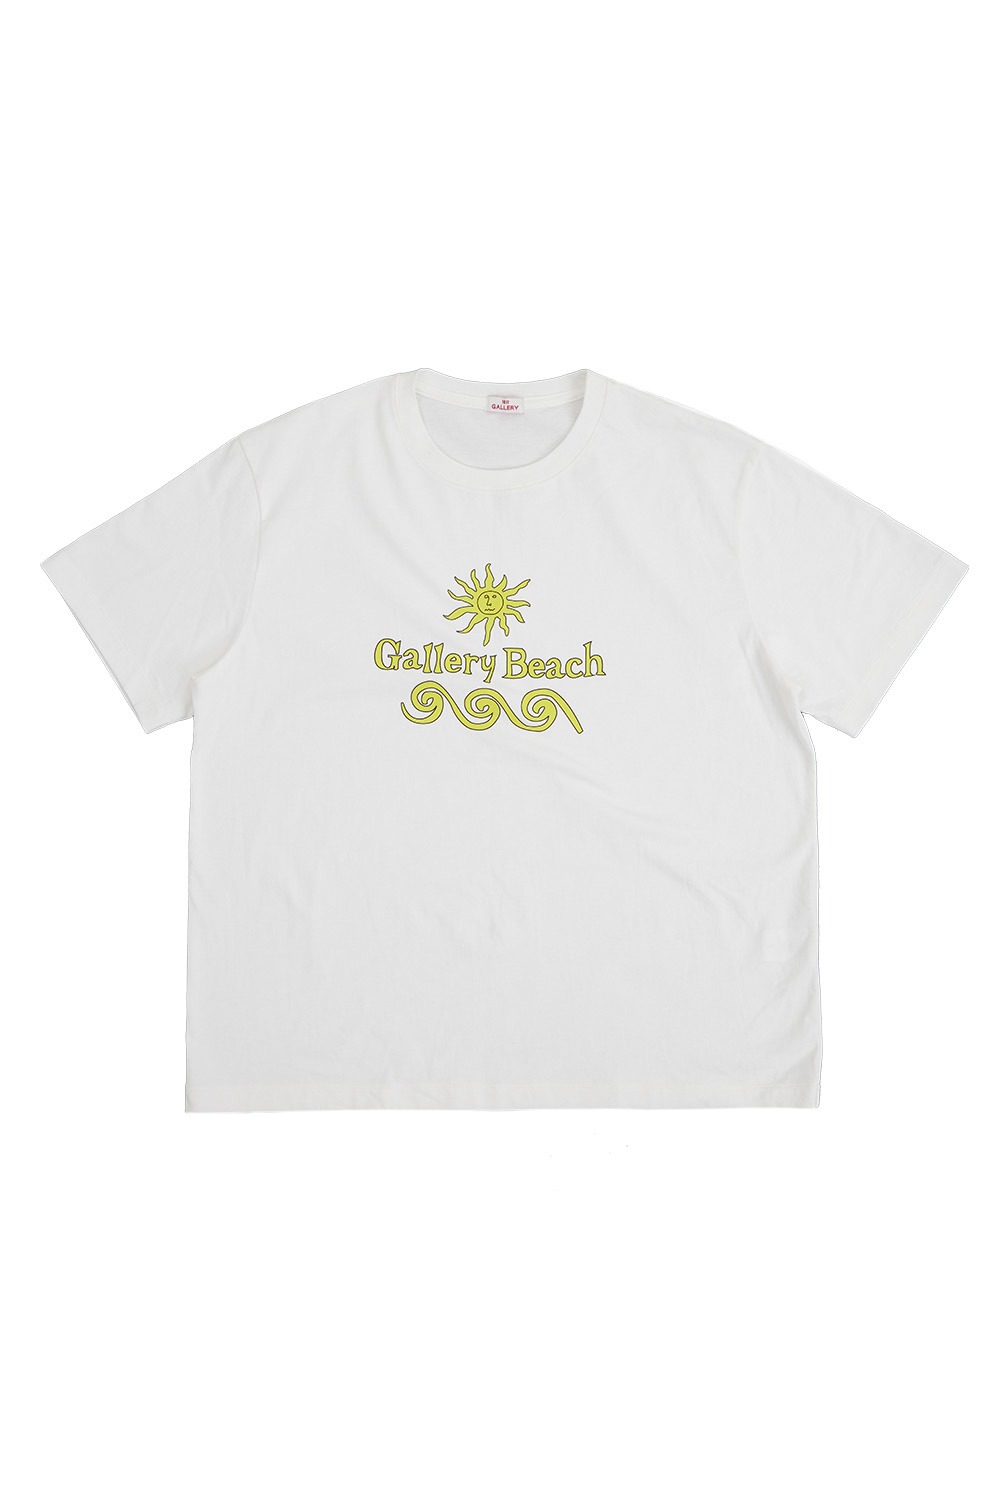 Gallery Beach T-shirt - White